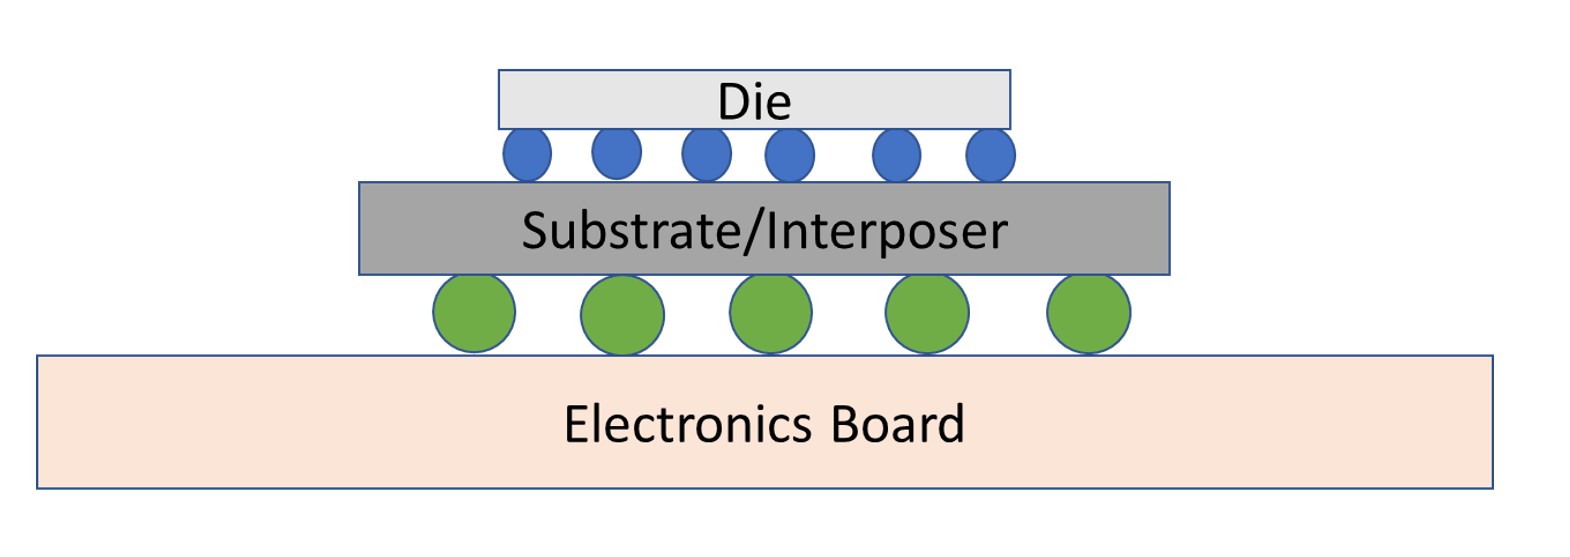 איור 4: דיאגרמה קונספטואלית של אריזת Flip-Chip. מקור: א. מייקסנר/הנדסת מוליכים למחצה